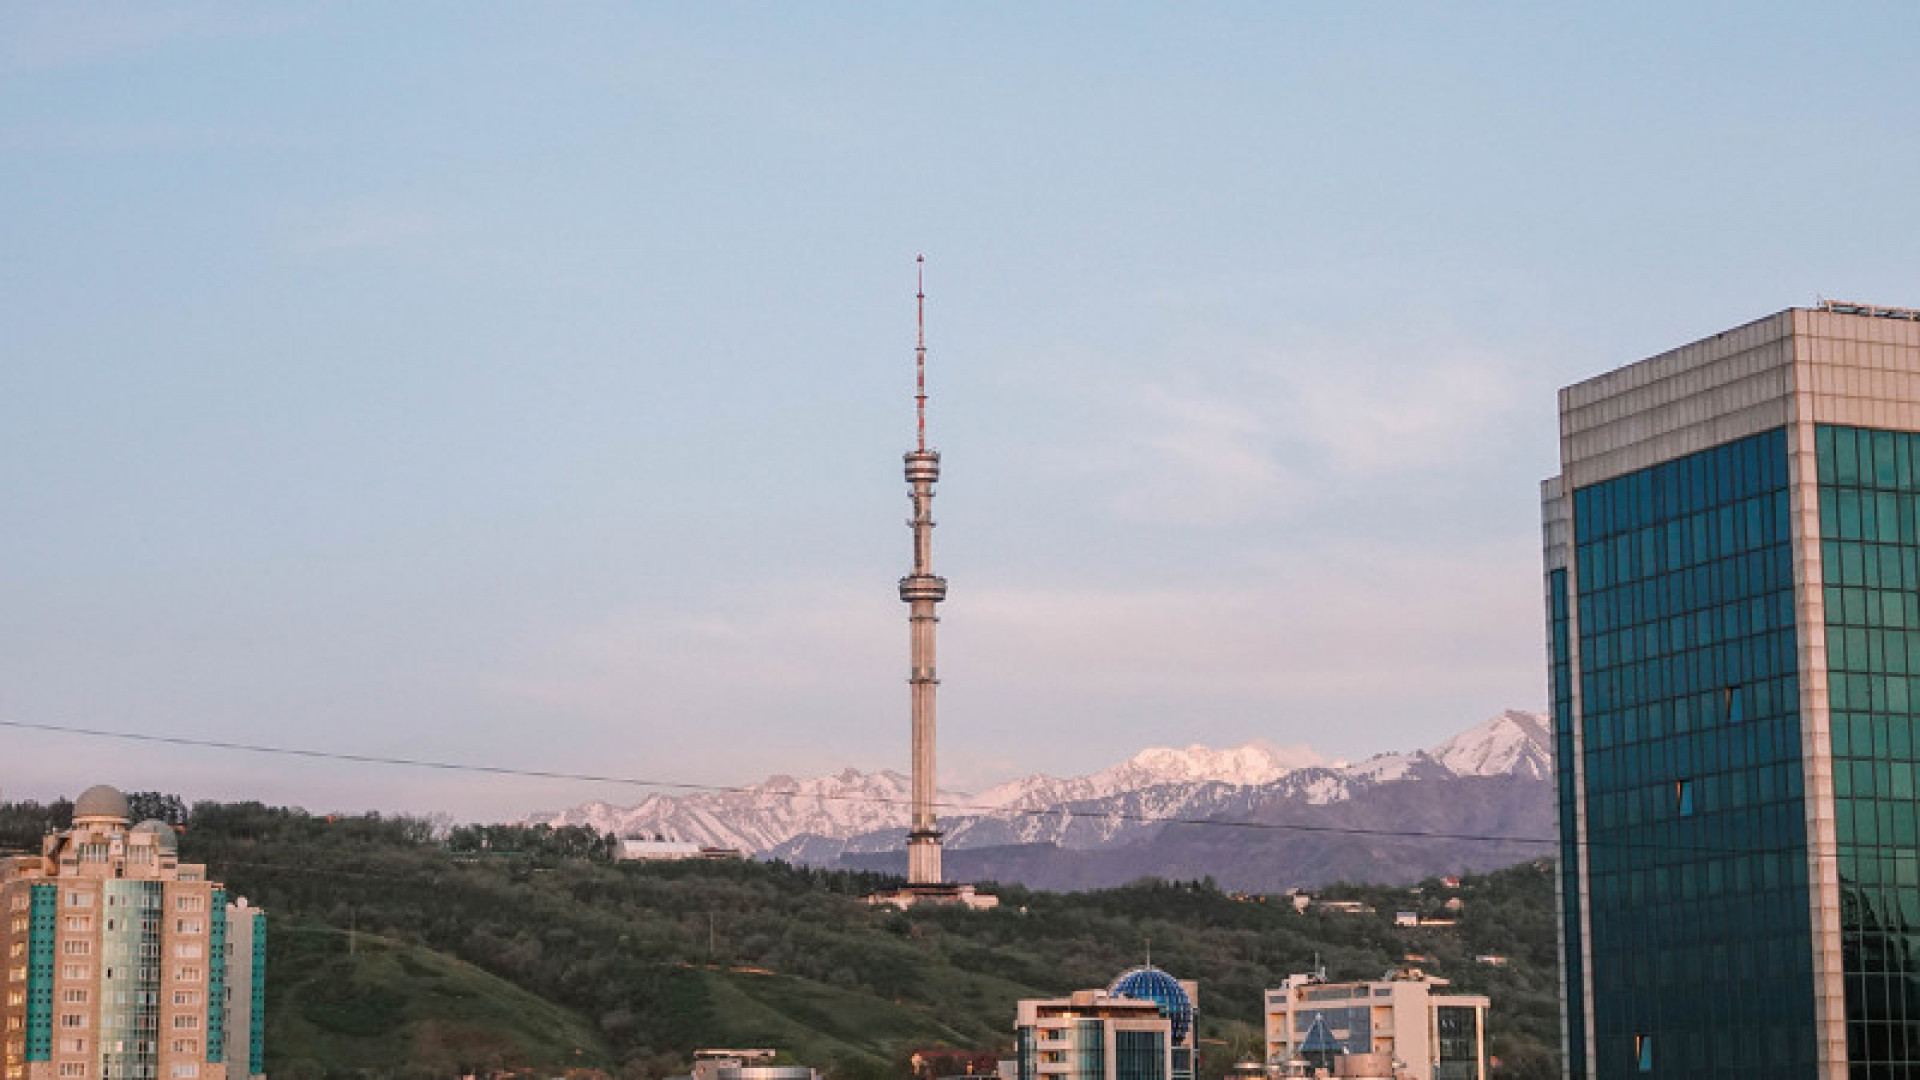 ТОП-10 мест для незабываемых выходных в Астане и Алматы!